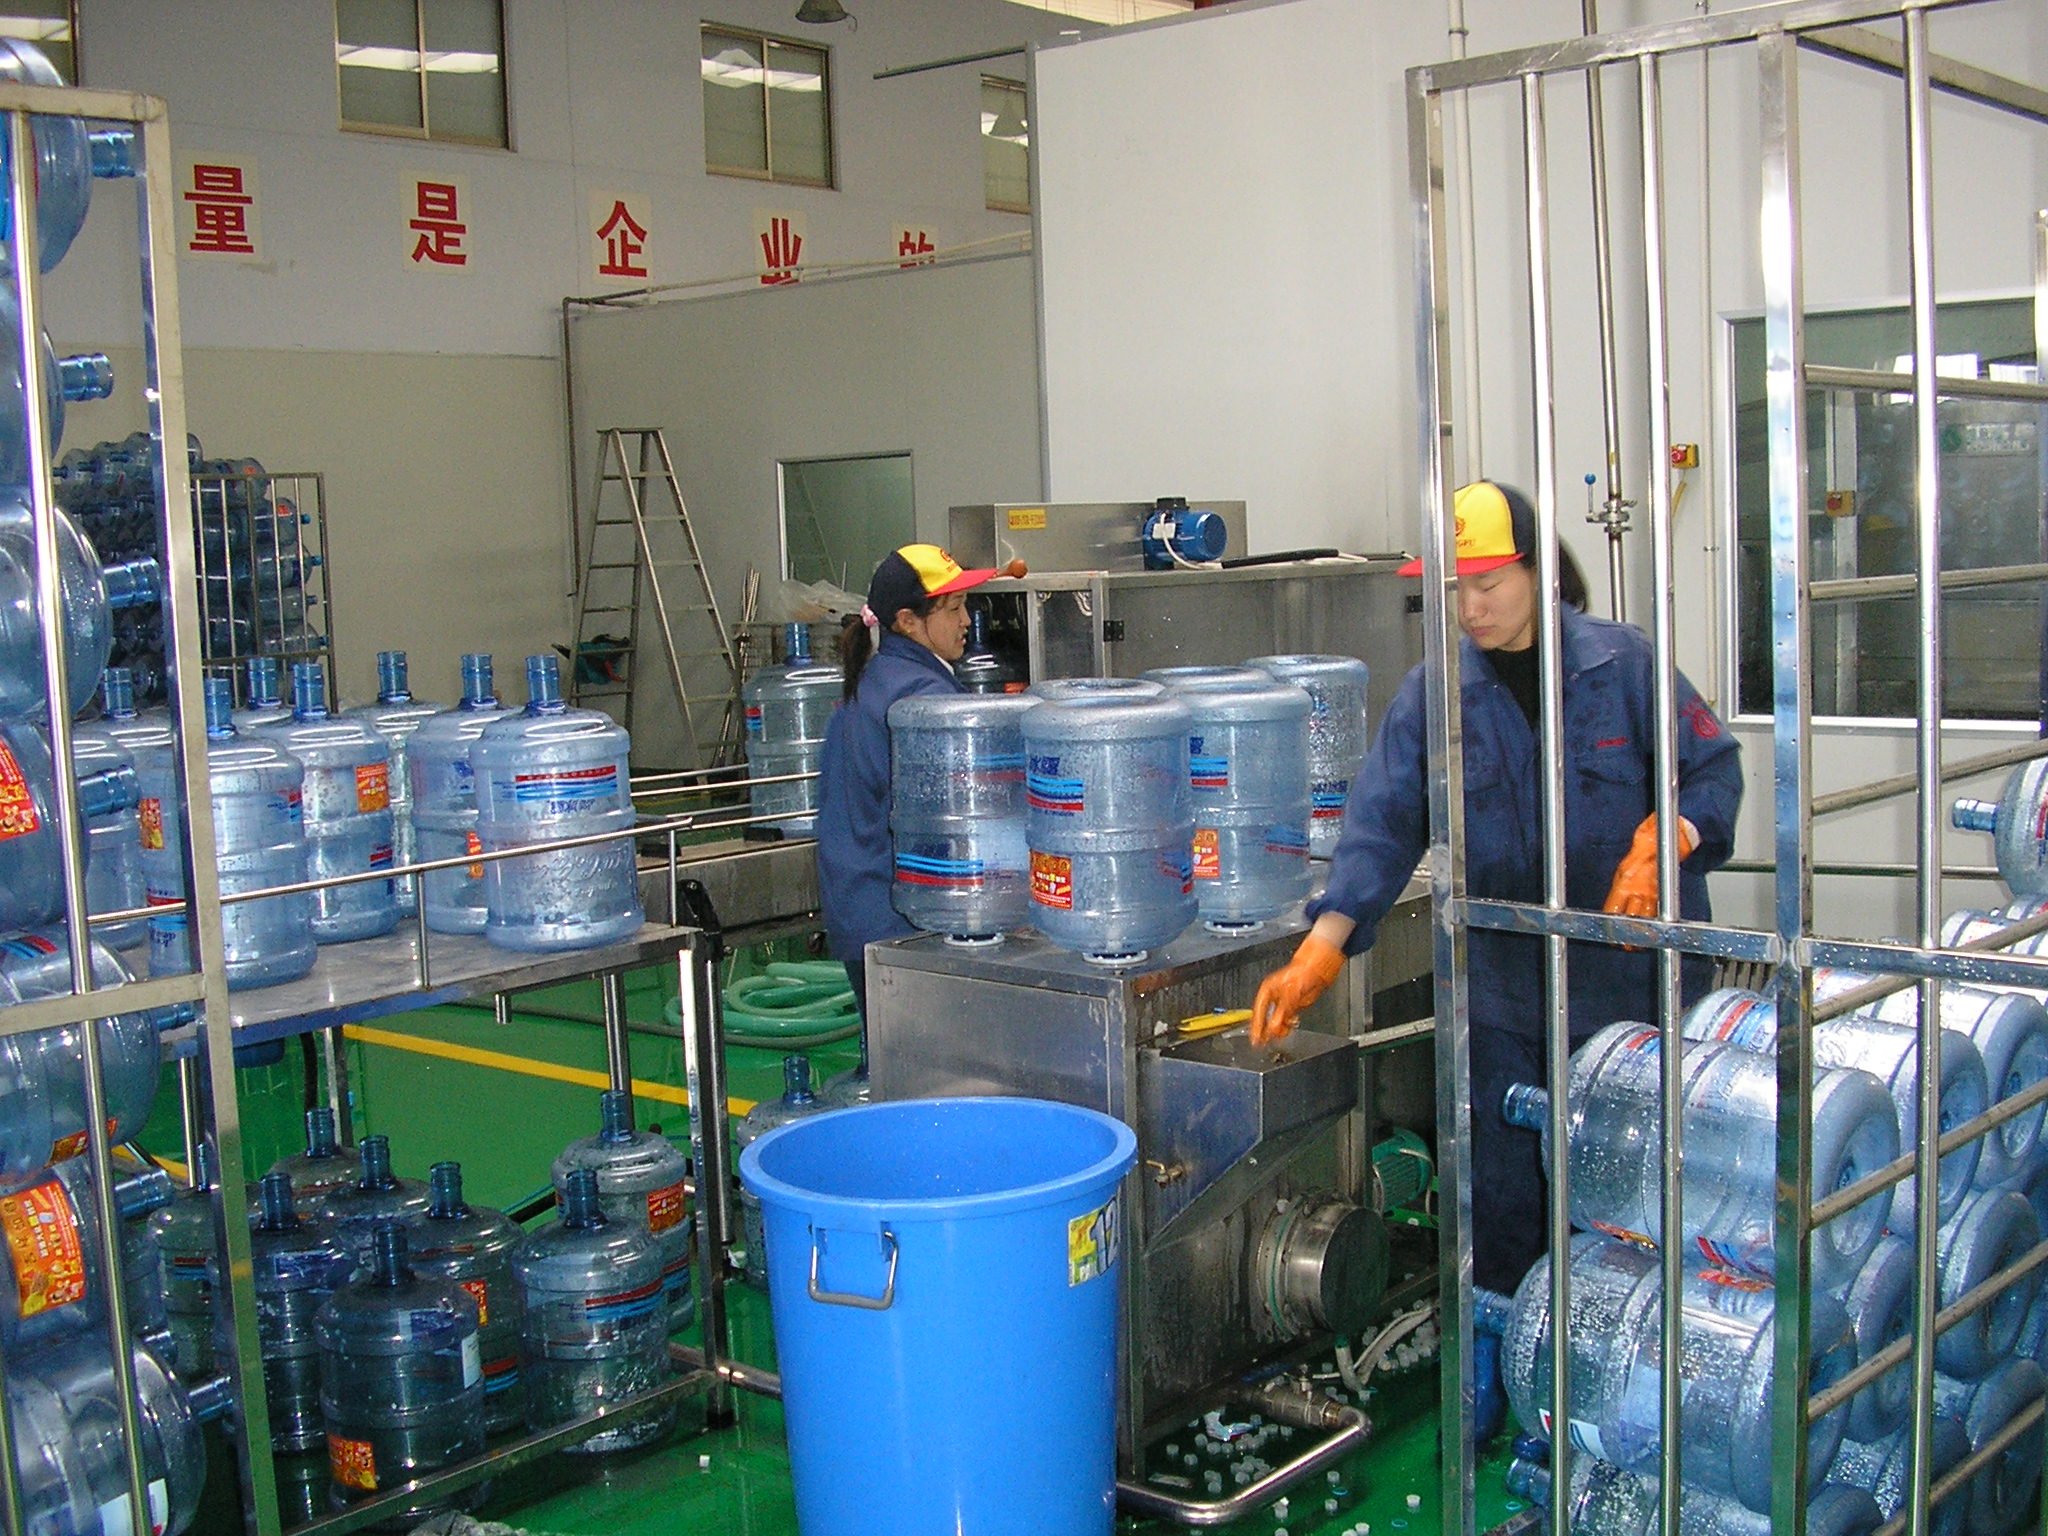 衢州矿泉水包装设备生产厂家